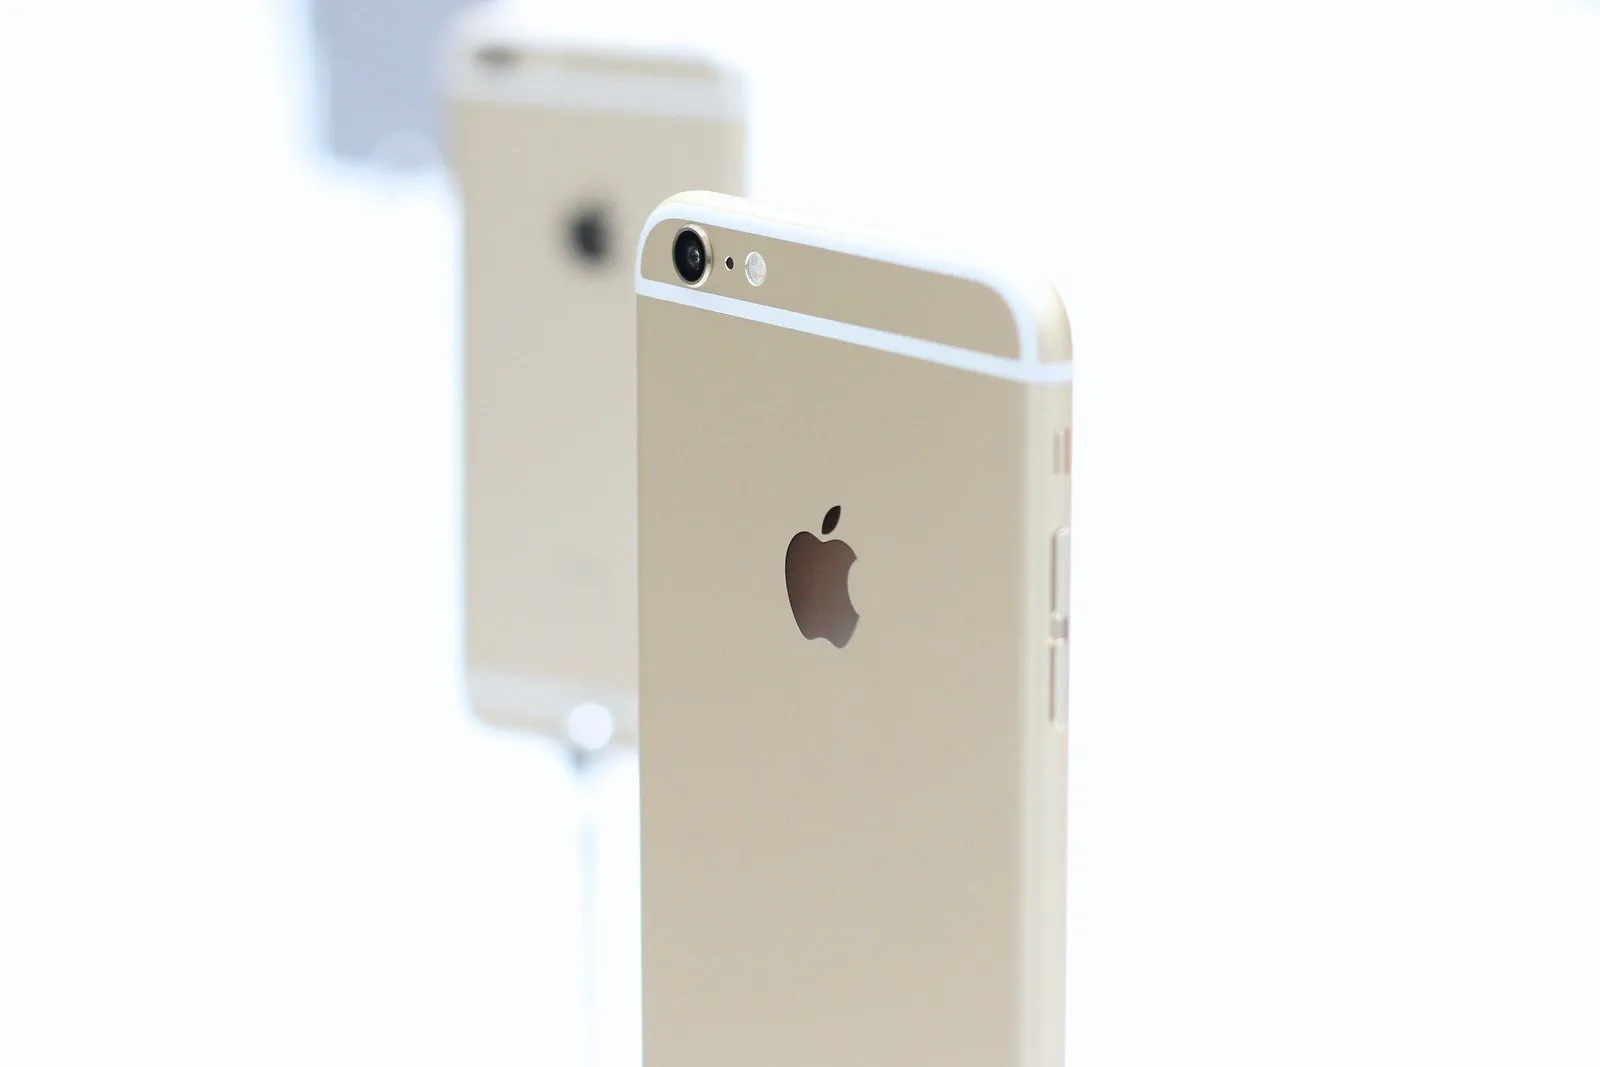 Apple ha riconosciuto l'iPhone 6 come un prodotto "vintage